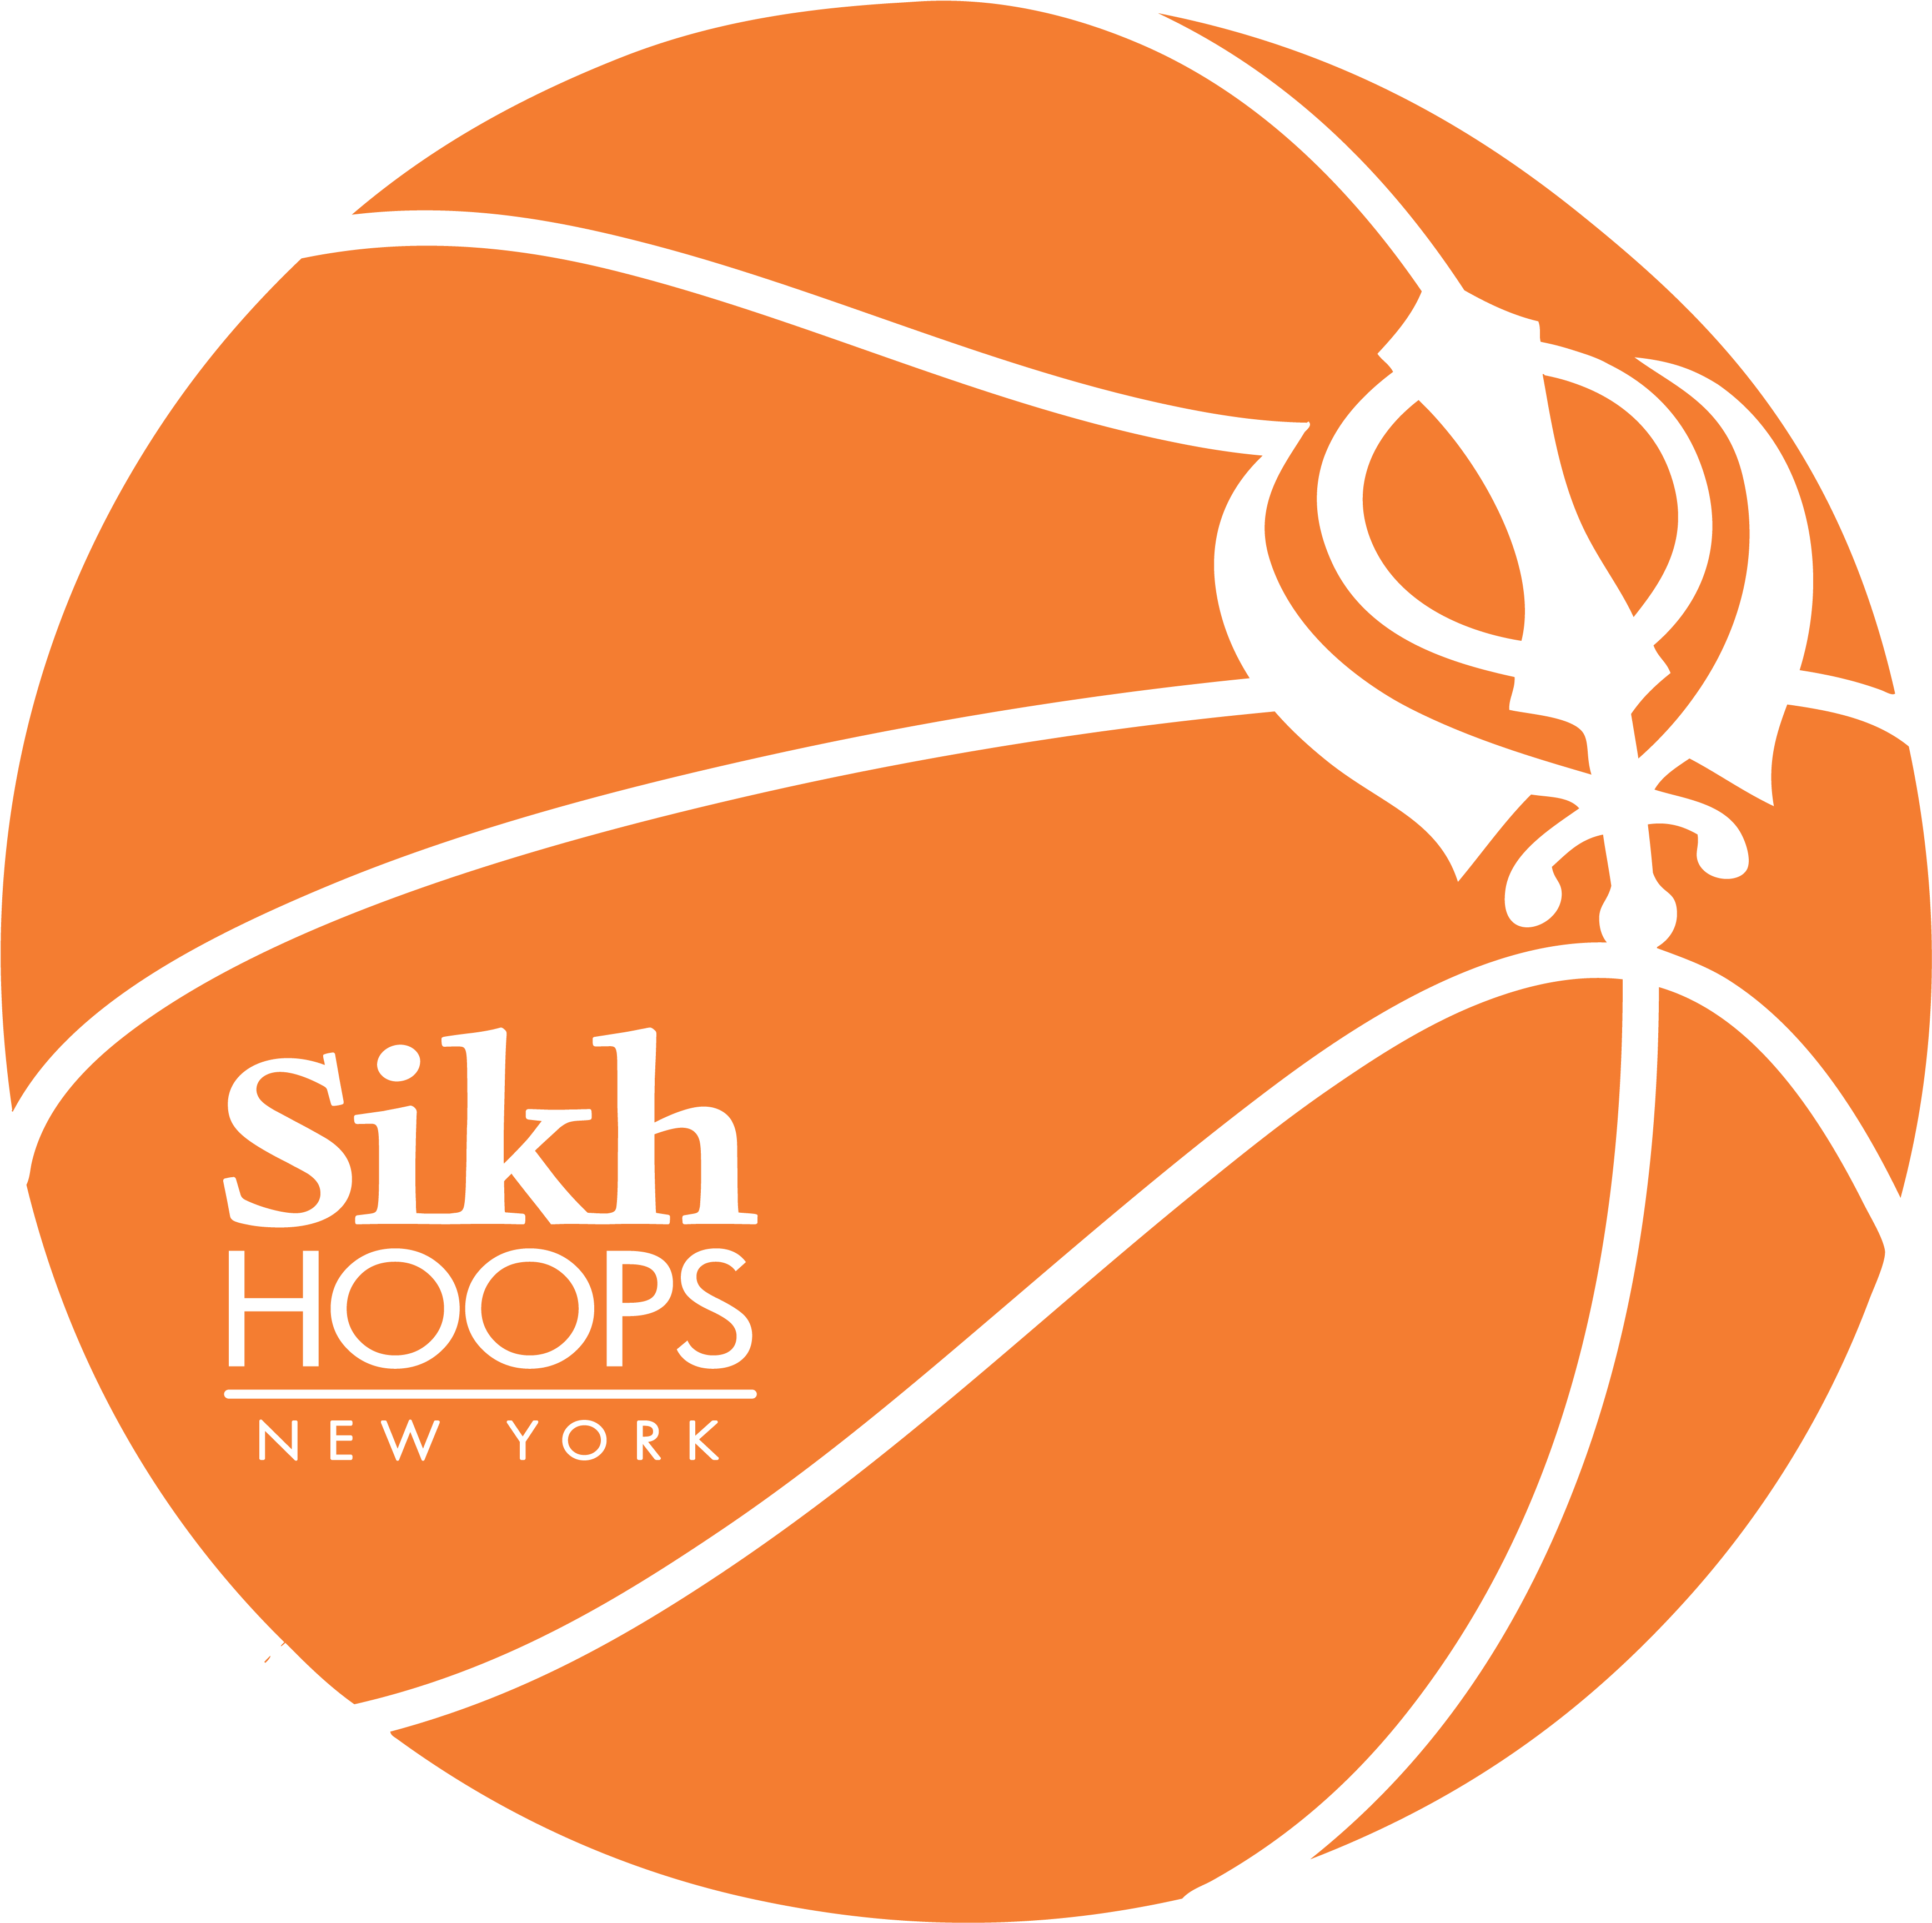 A Logo Of A Basketball